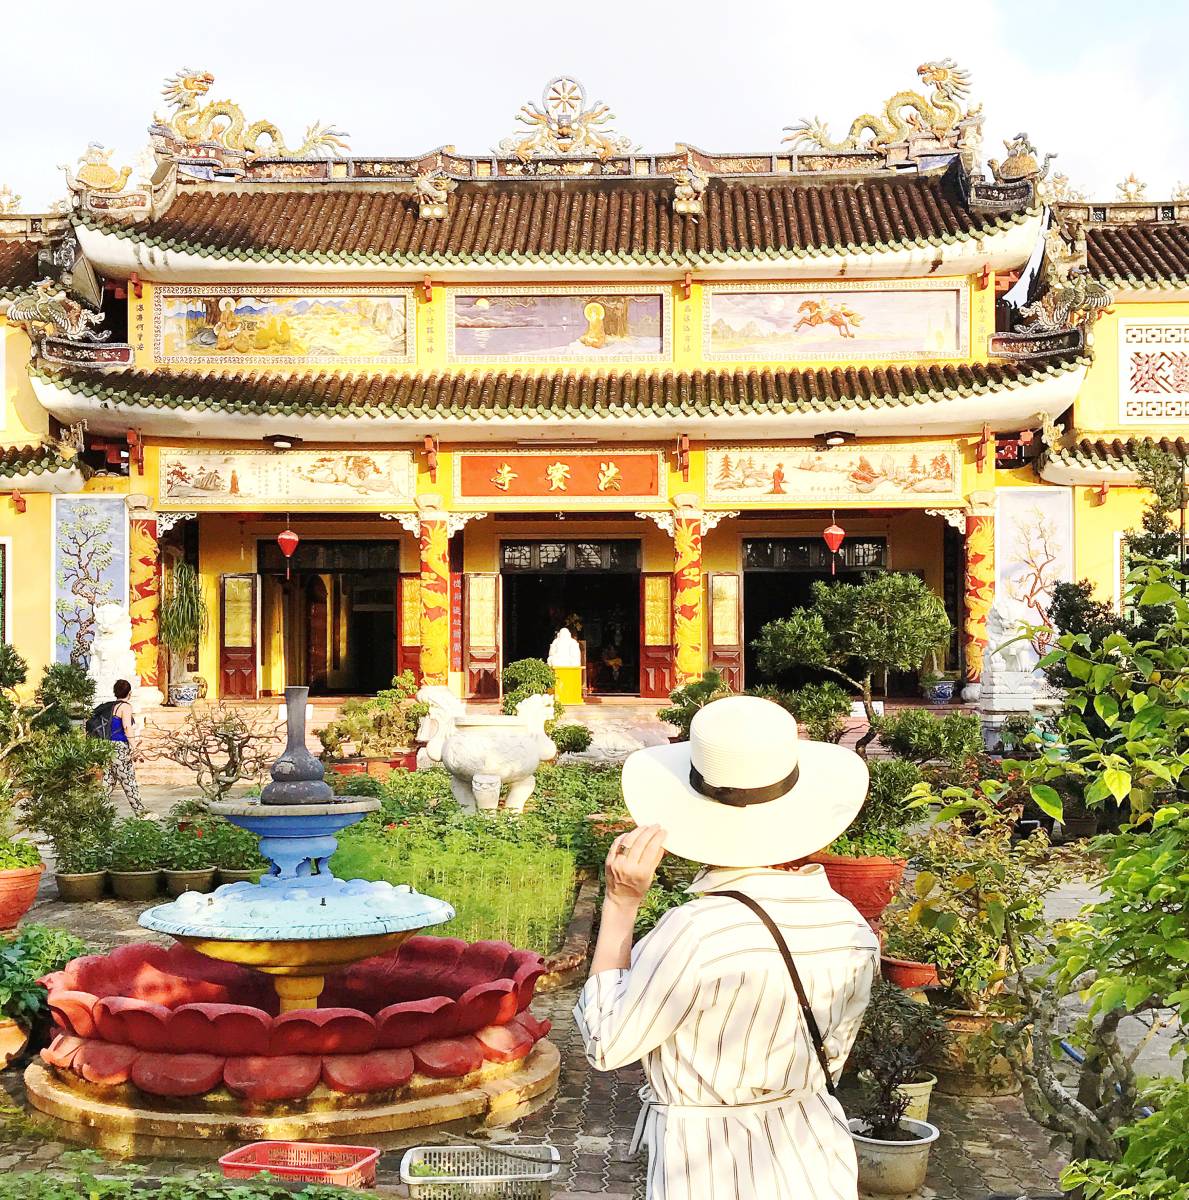 Az egyik pagoda